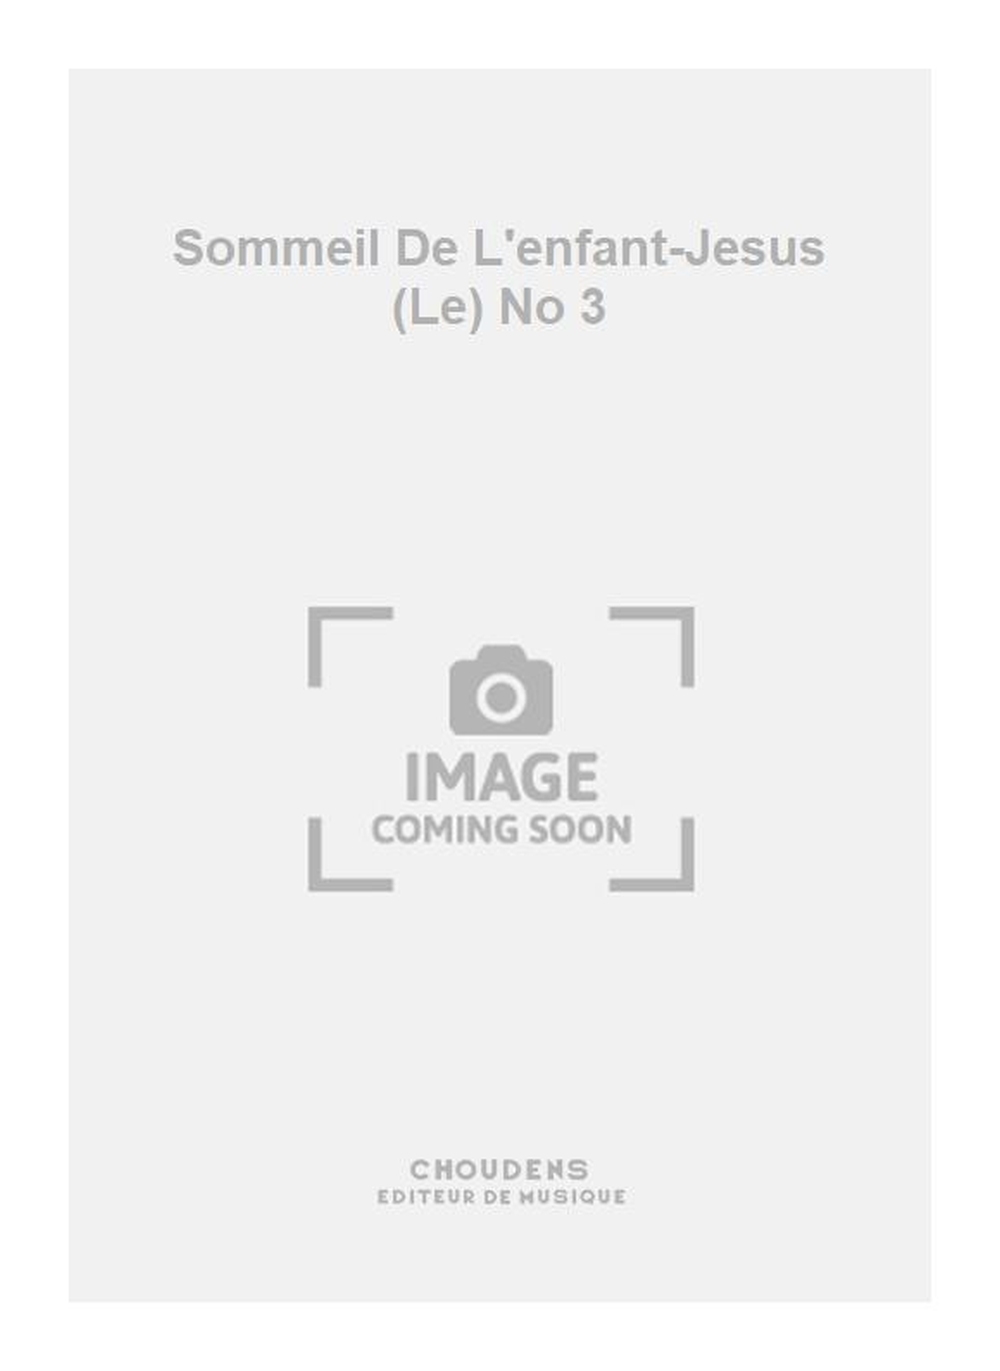 Henri Büsser: Sommeil De L'enfant-Jesus (Le) No 3